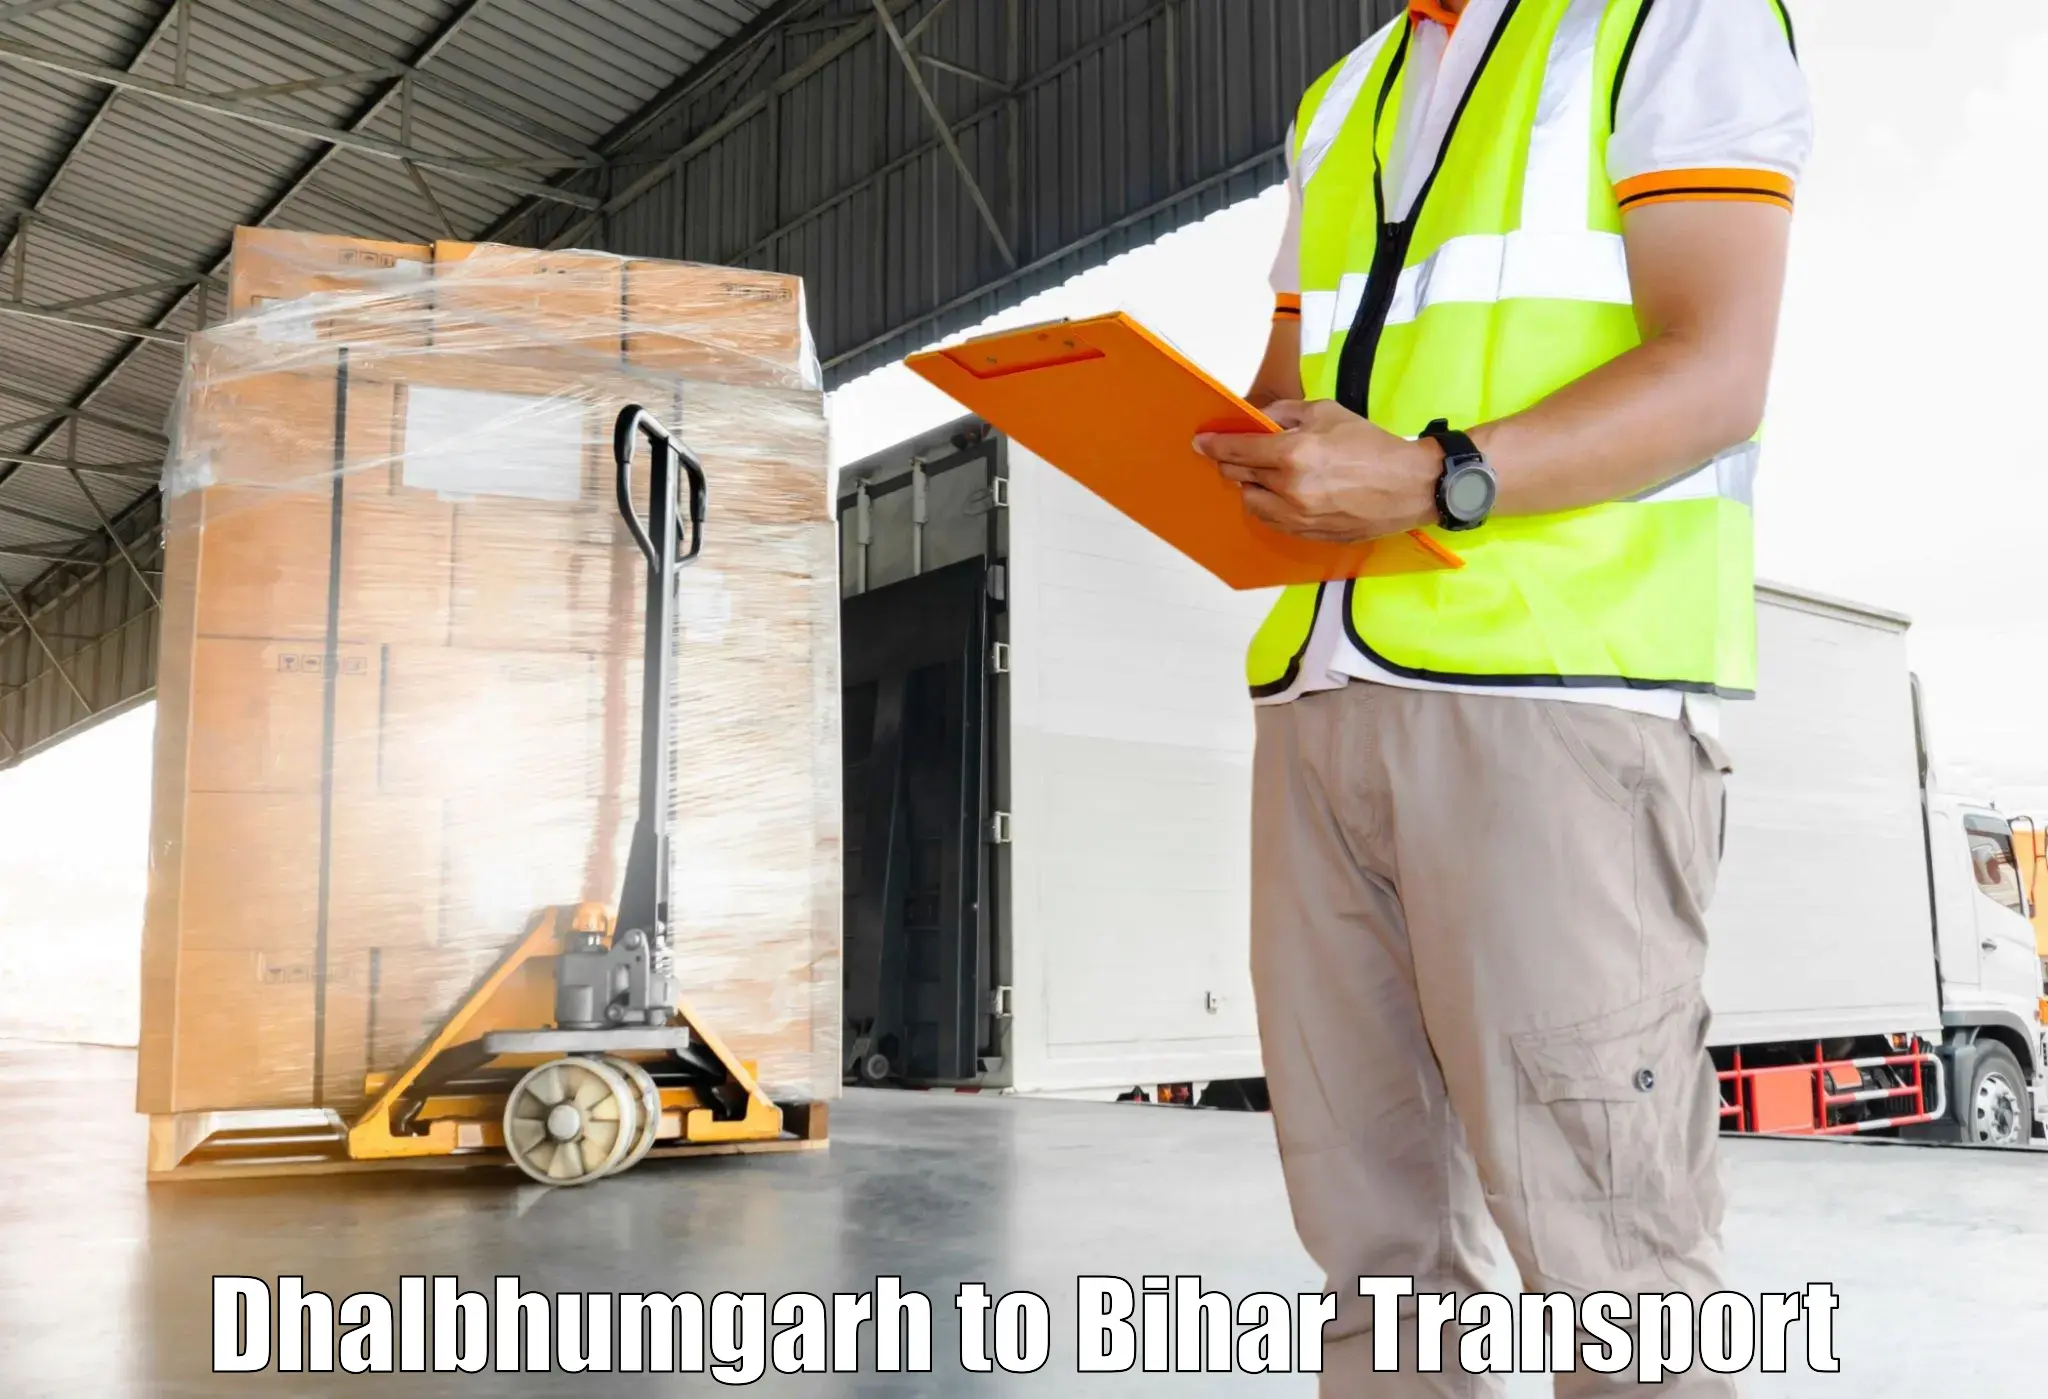 Online transport in Dhalbhumgarh to Bihar